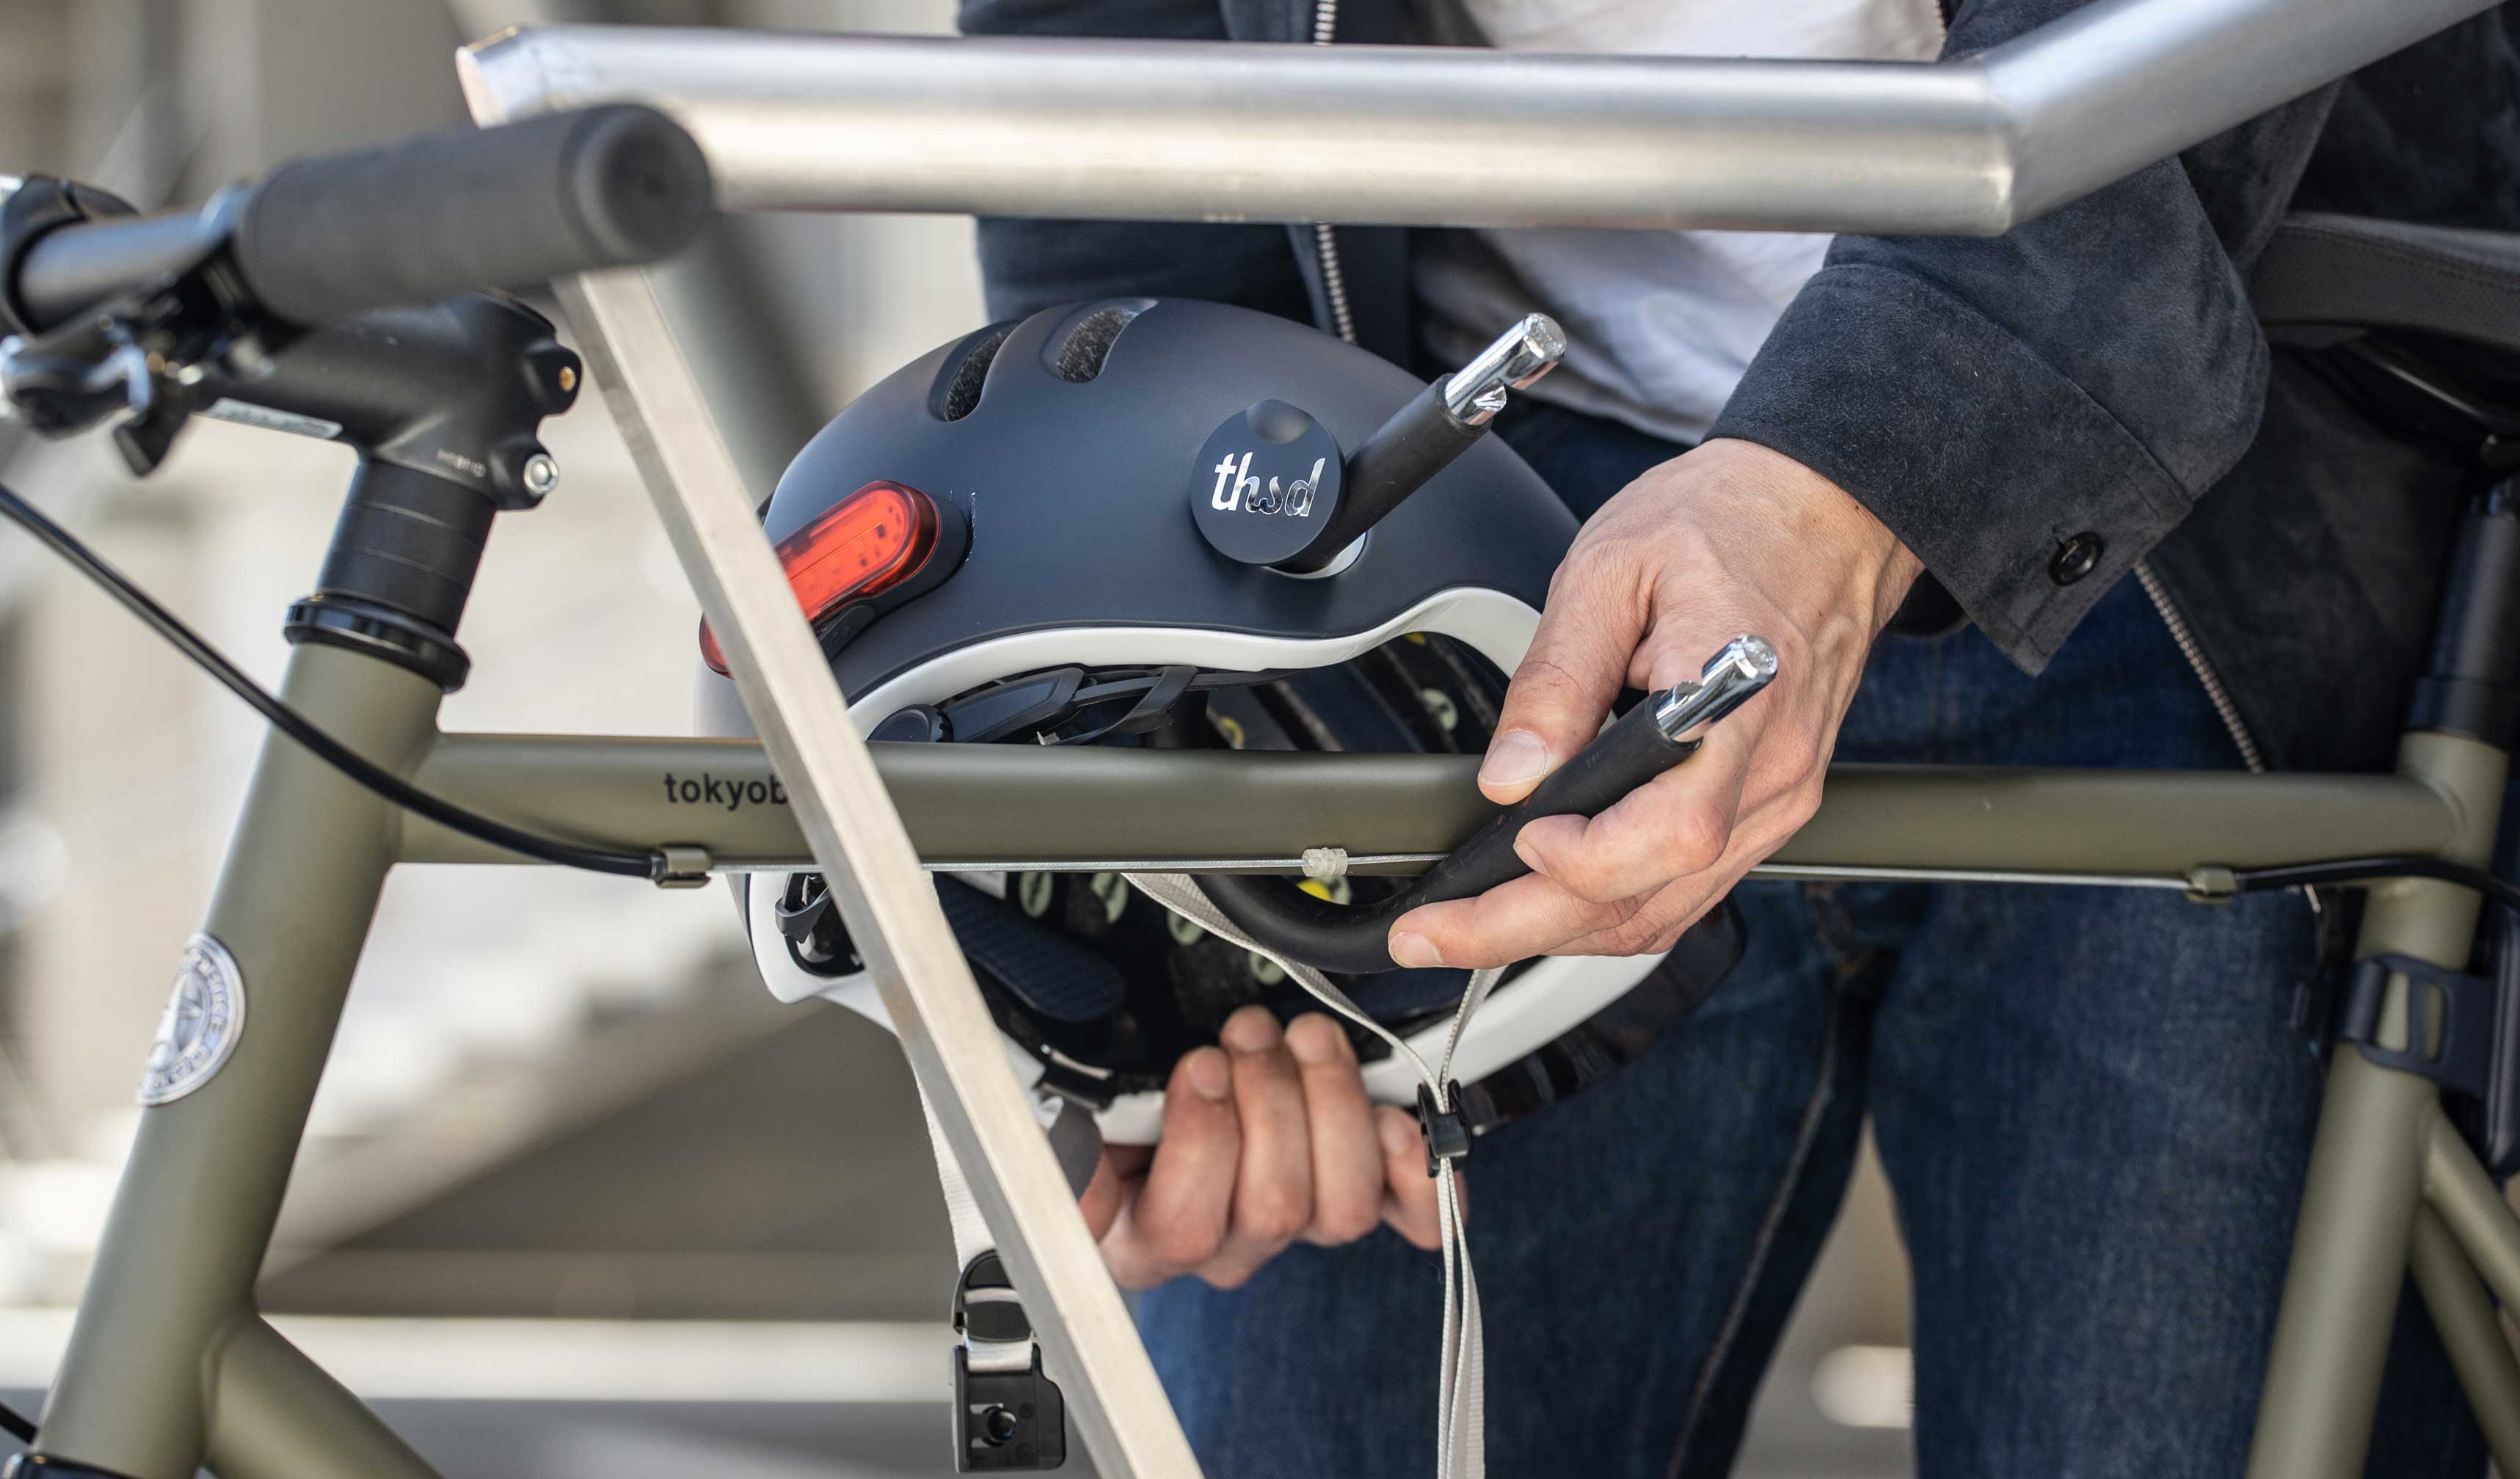 global Grande postre Cómo forrar un casco de moto, bici o patinete - Servei Estació